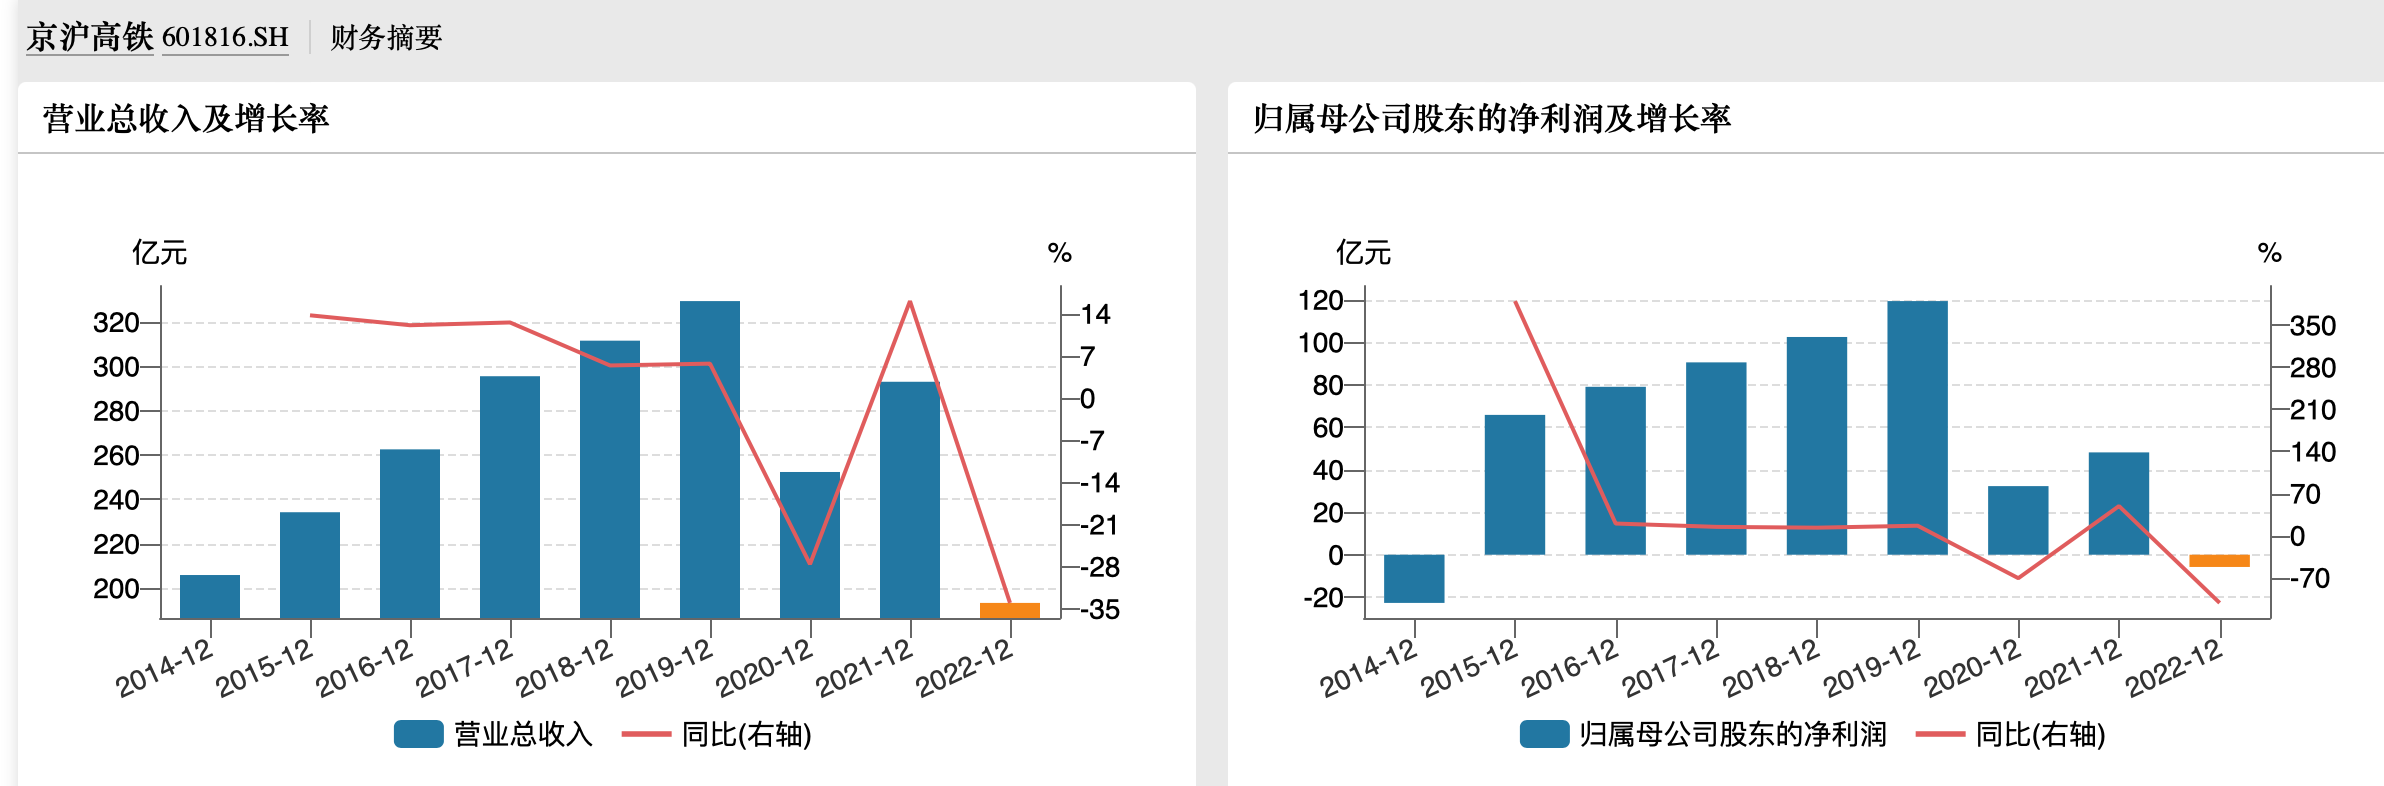 京沪高铁去年亏损近6亿今年一季度净利暴增9倍恢复至疫情前水平